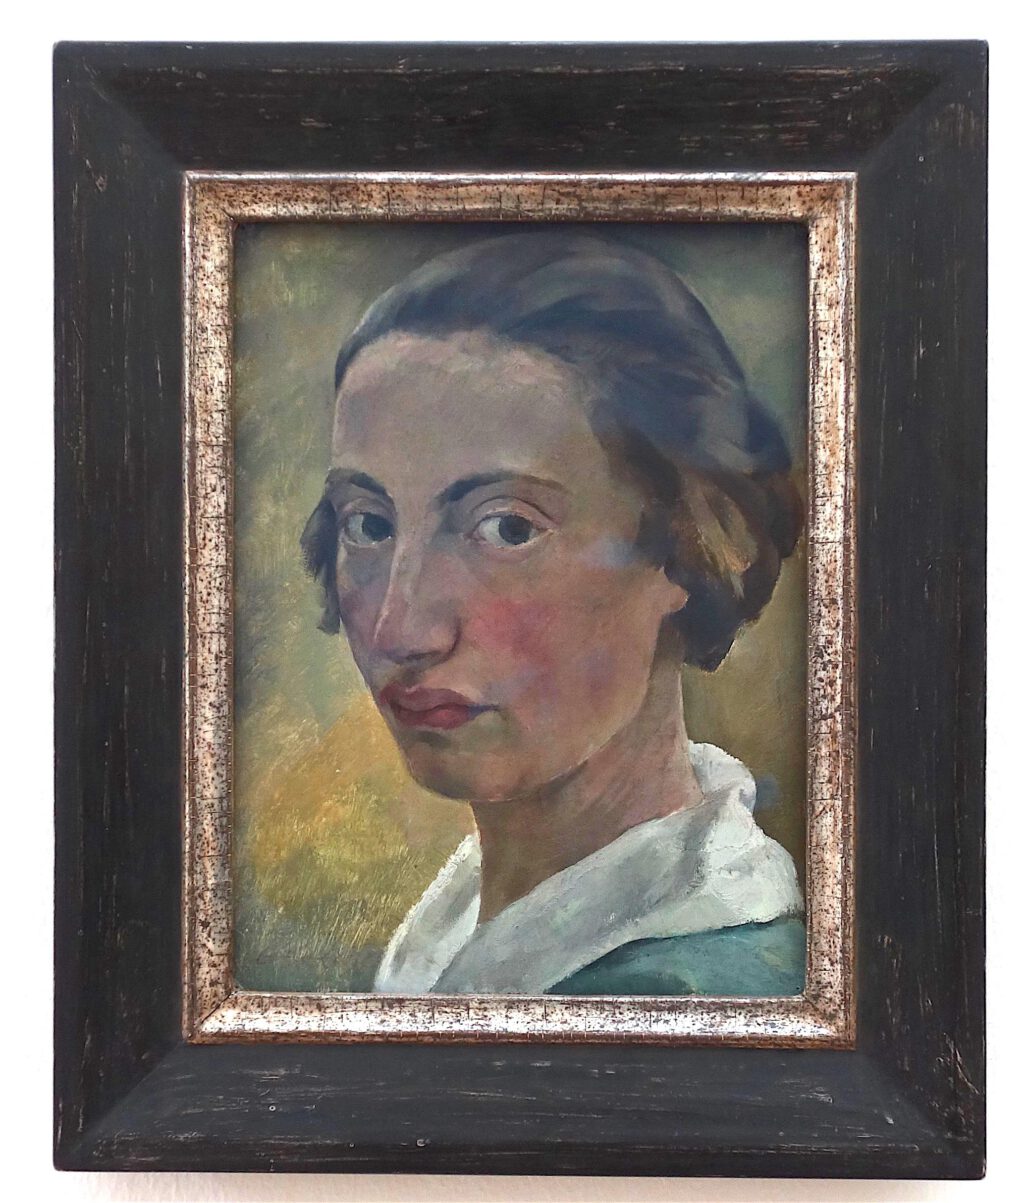 ロッテ・ラーゼルシュタイン「白襟の自画像」厚紙にに油彩、32 x 24 センチ、約1923年